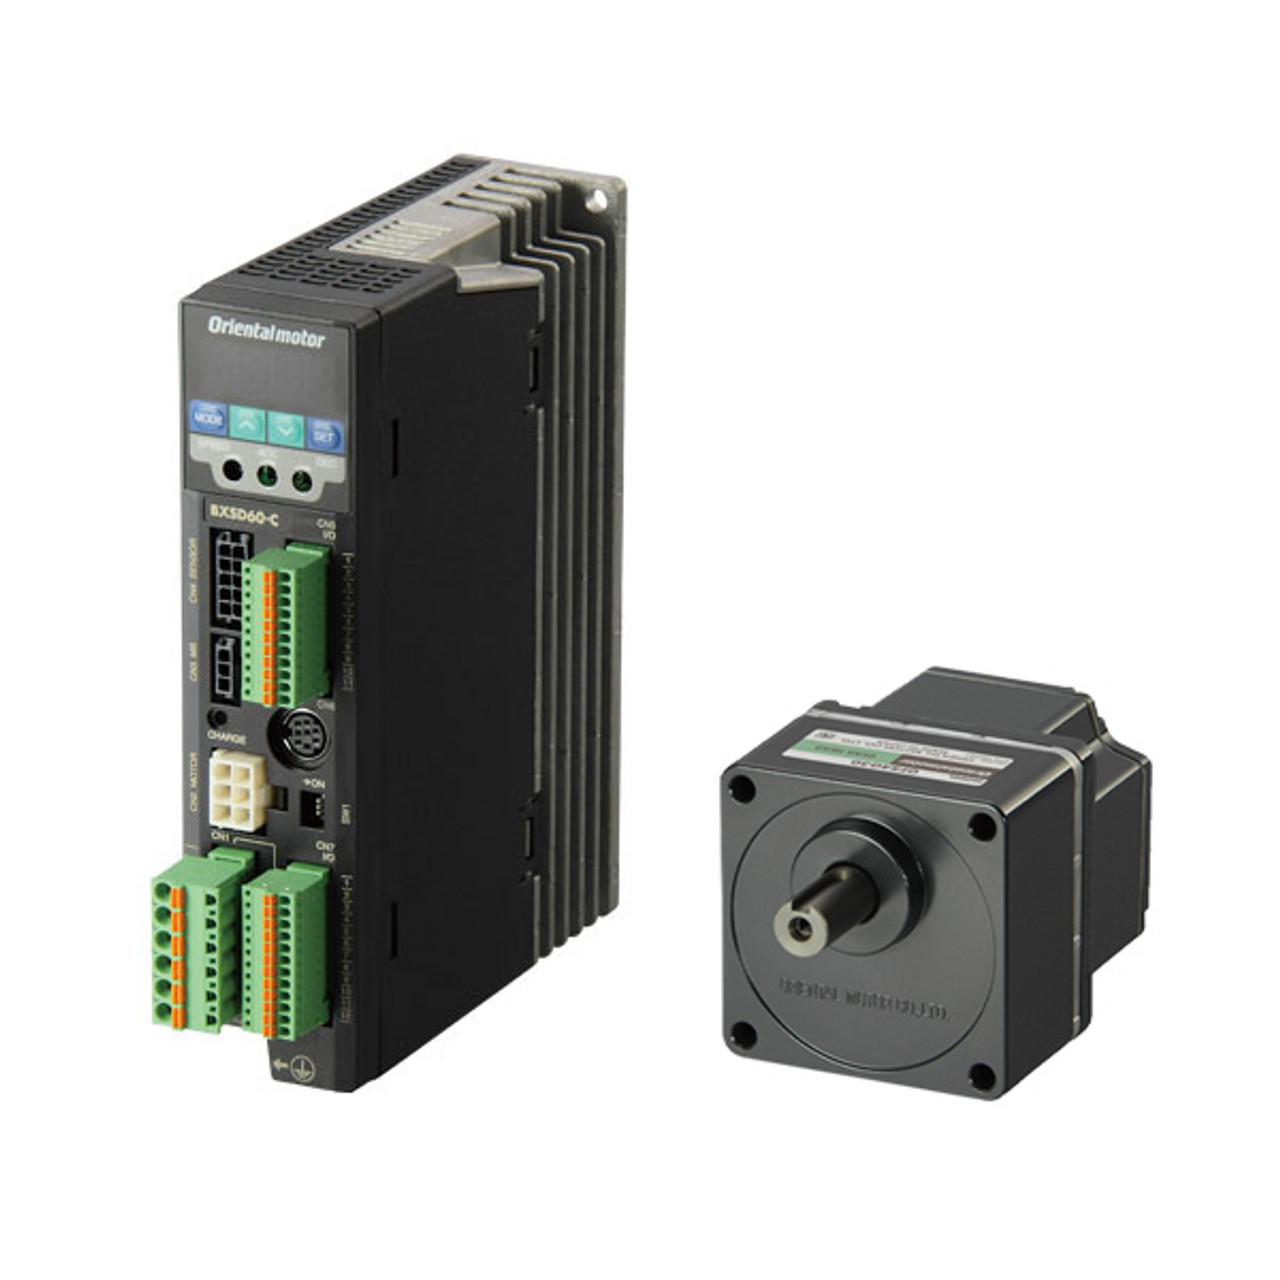 BXM230-30 / BXSD30-C2 - Product Image